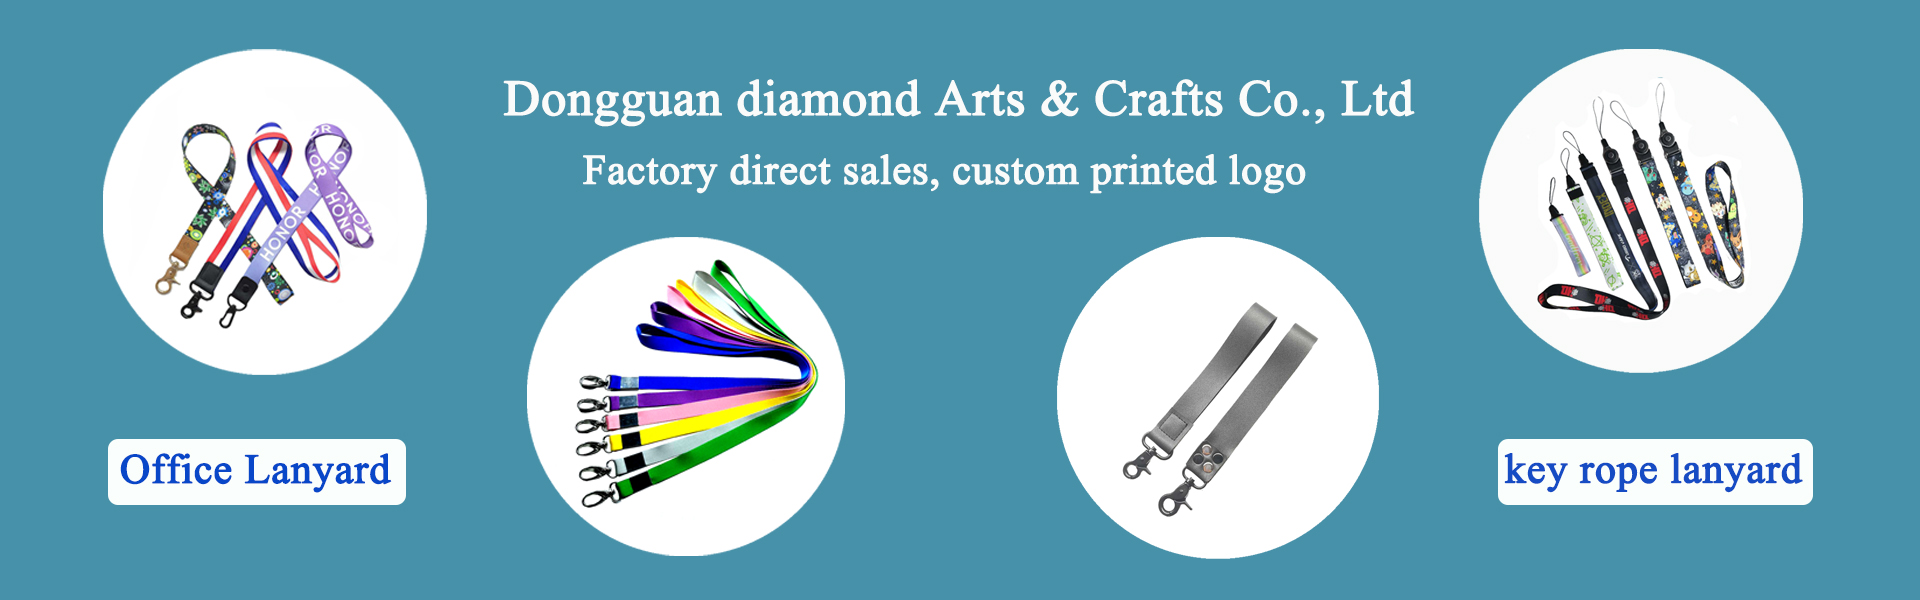 Lanyard, oděvní doplňky, potřeby pro zvířata,Dongguan diamond Arts & Crafts Co., Ltd